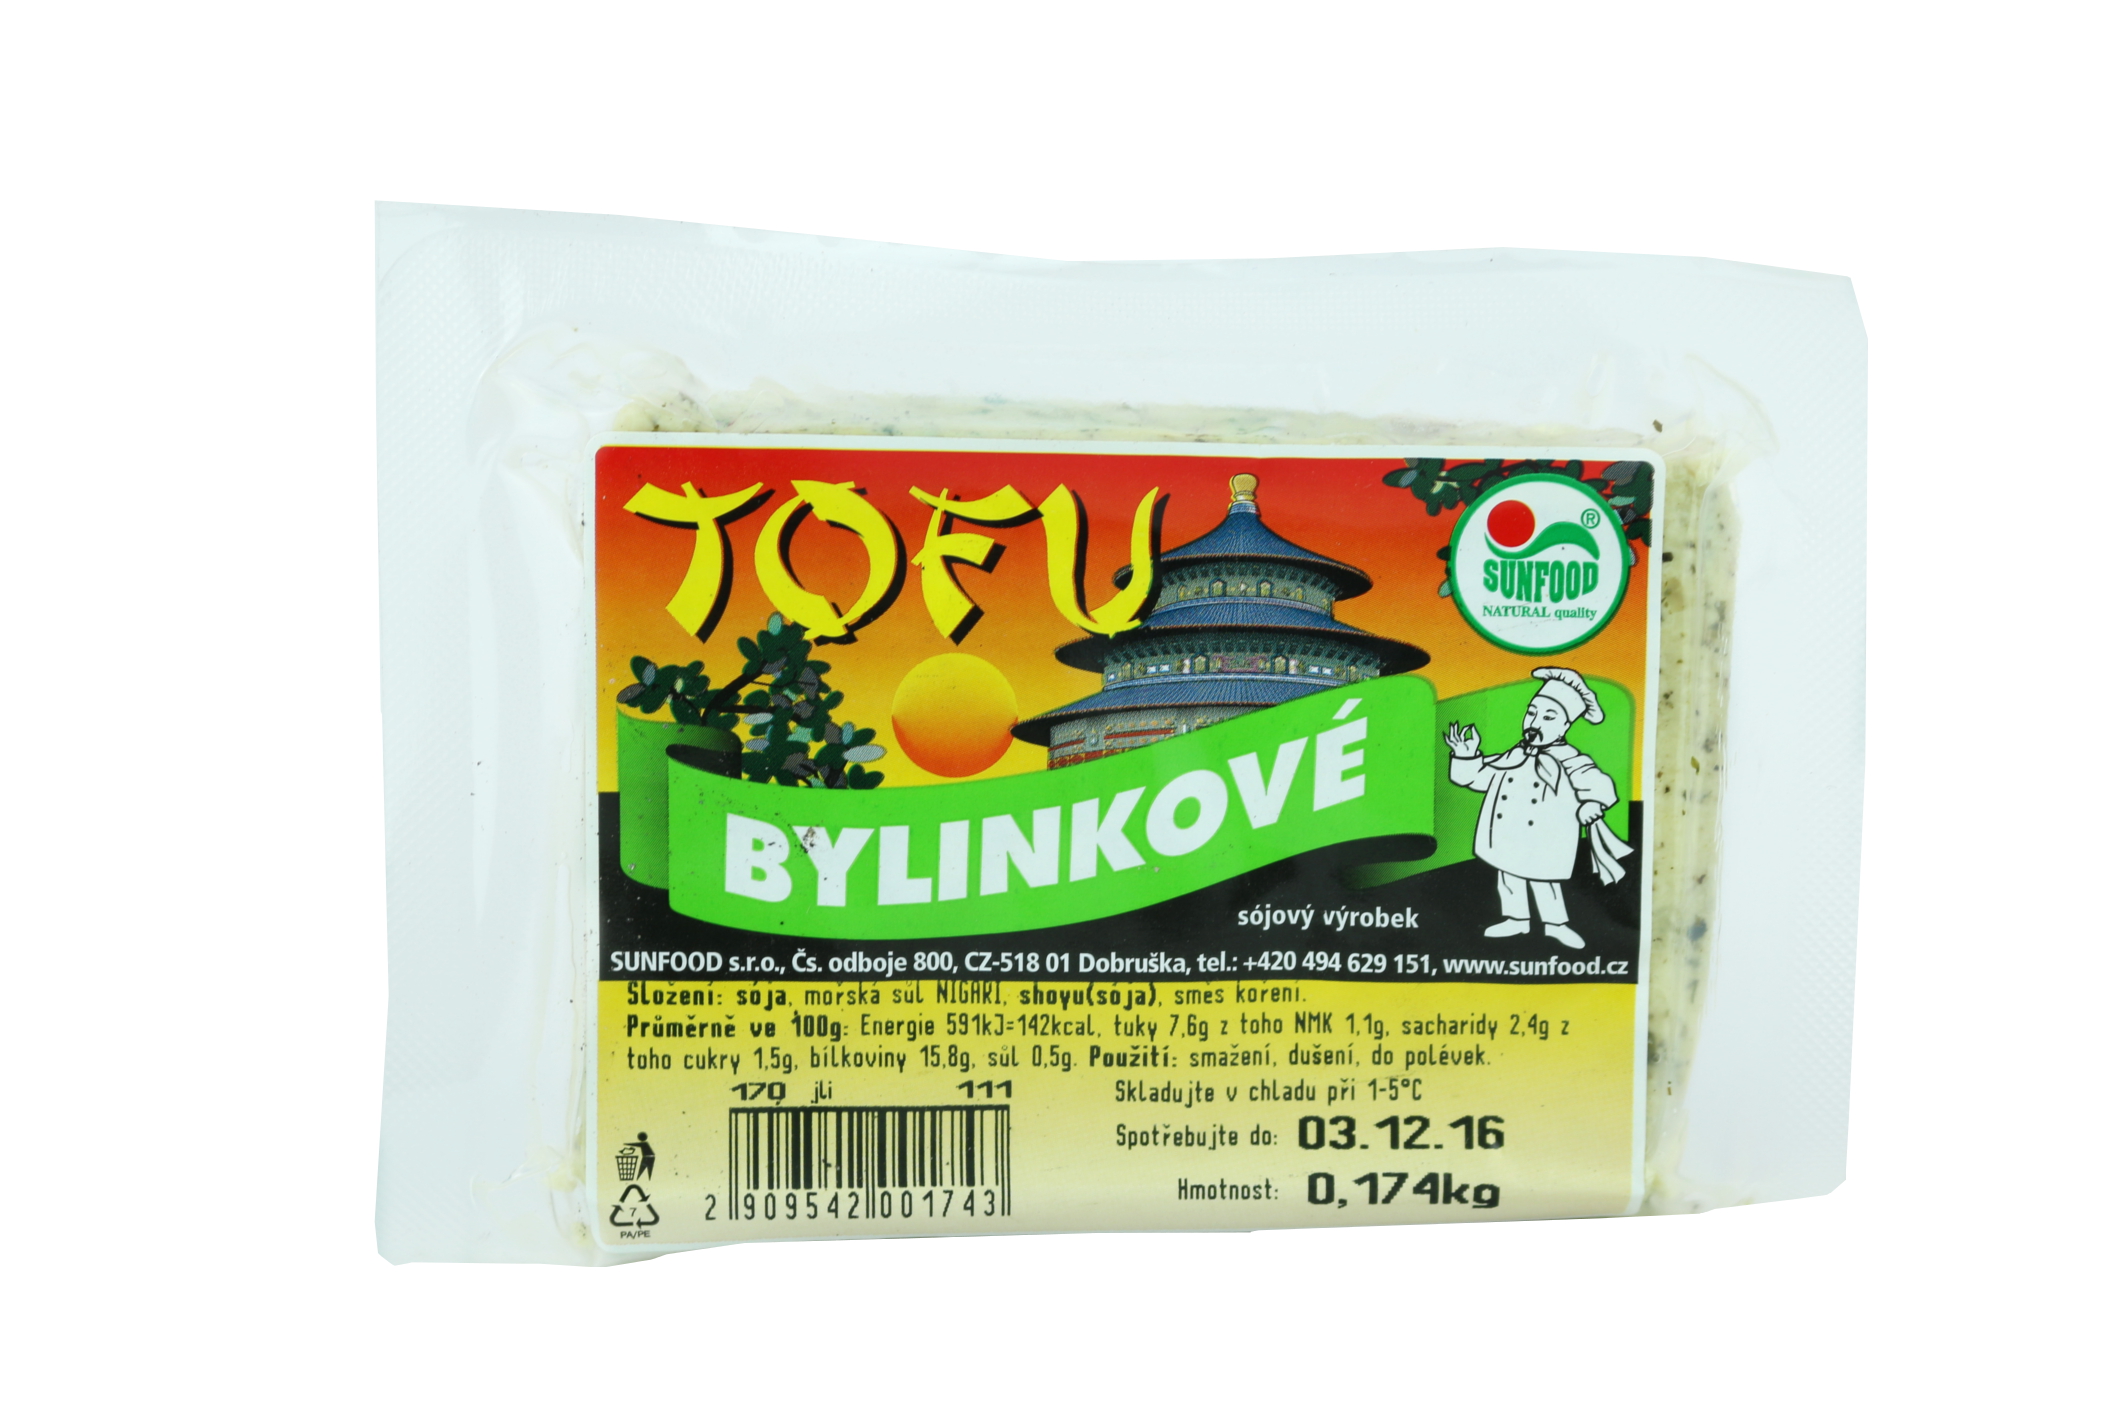 Tofu bylinkové 0,3 Kg - pouze rozvoz vybraná města nebo osobní odběr